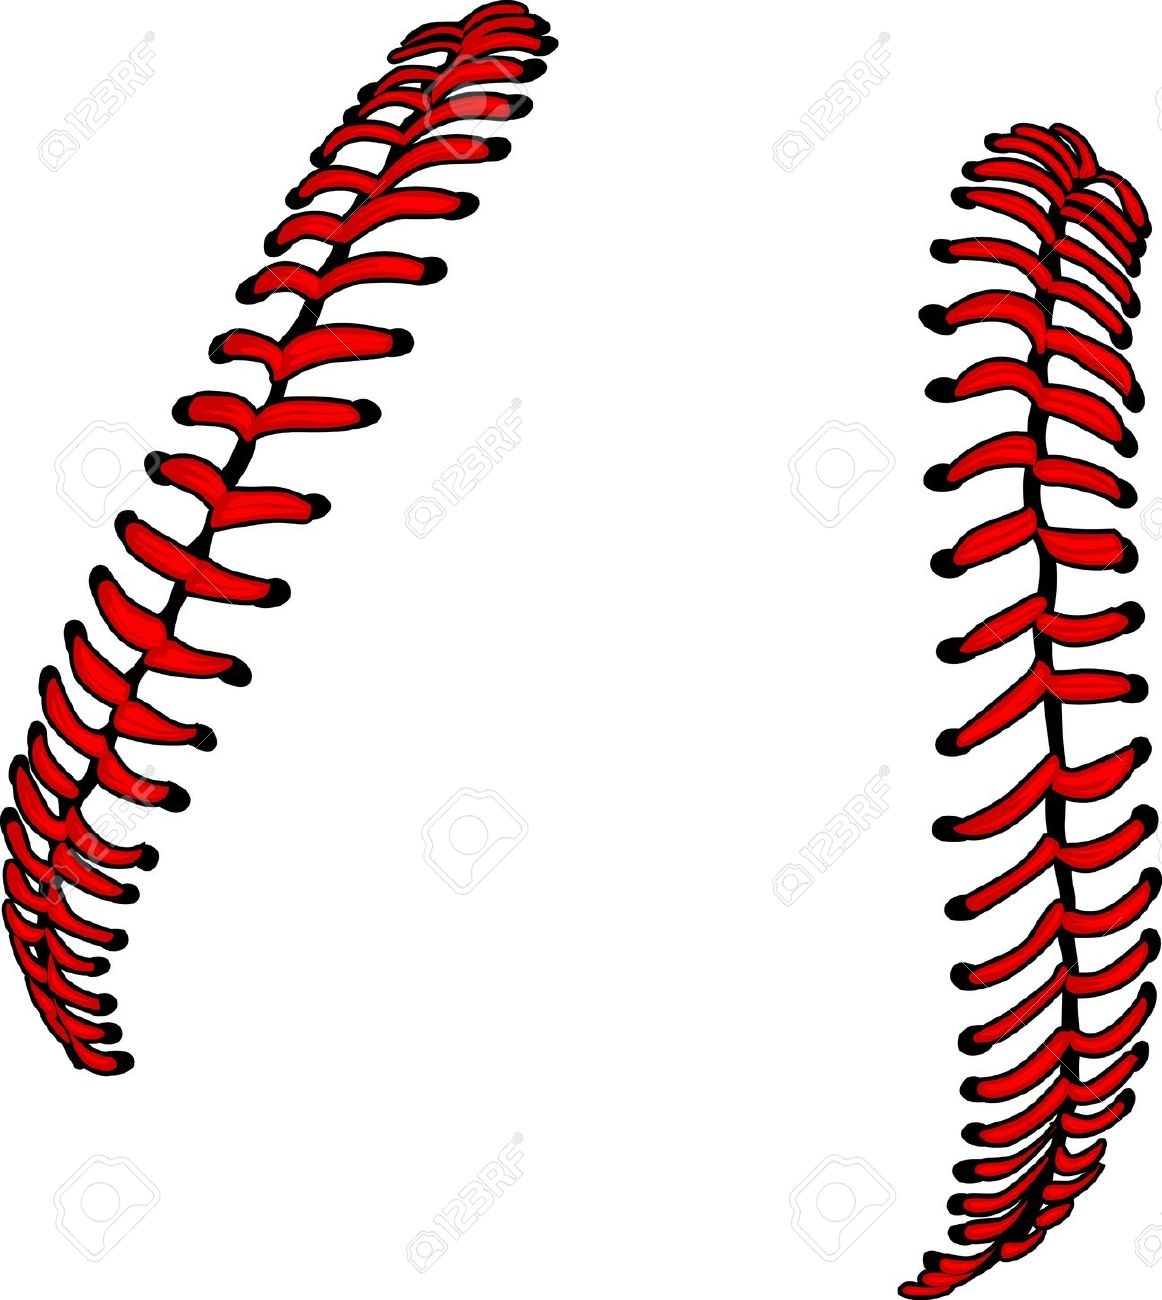 clipart baseball thread